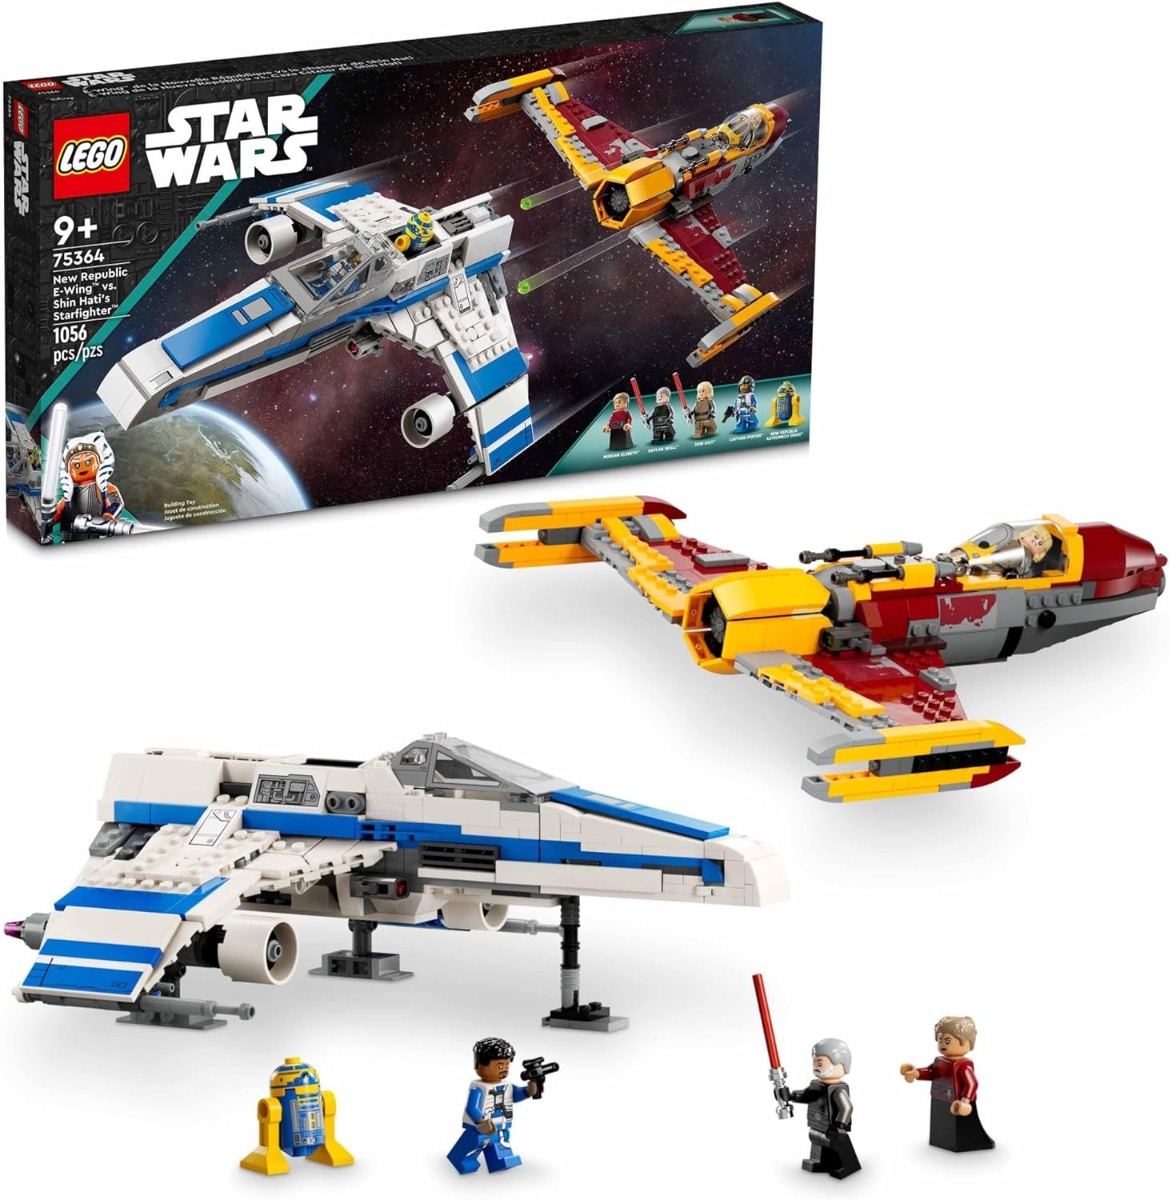 LEGO 75364 Star Wars: New Republic E-Wing vs. Shin Hati’s Starfighter